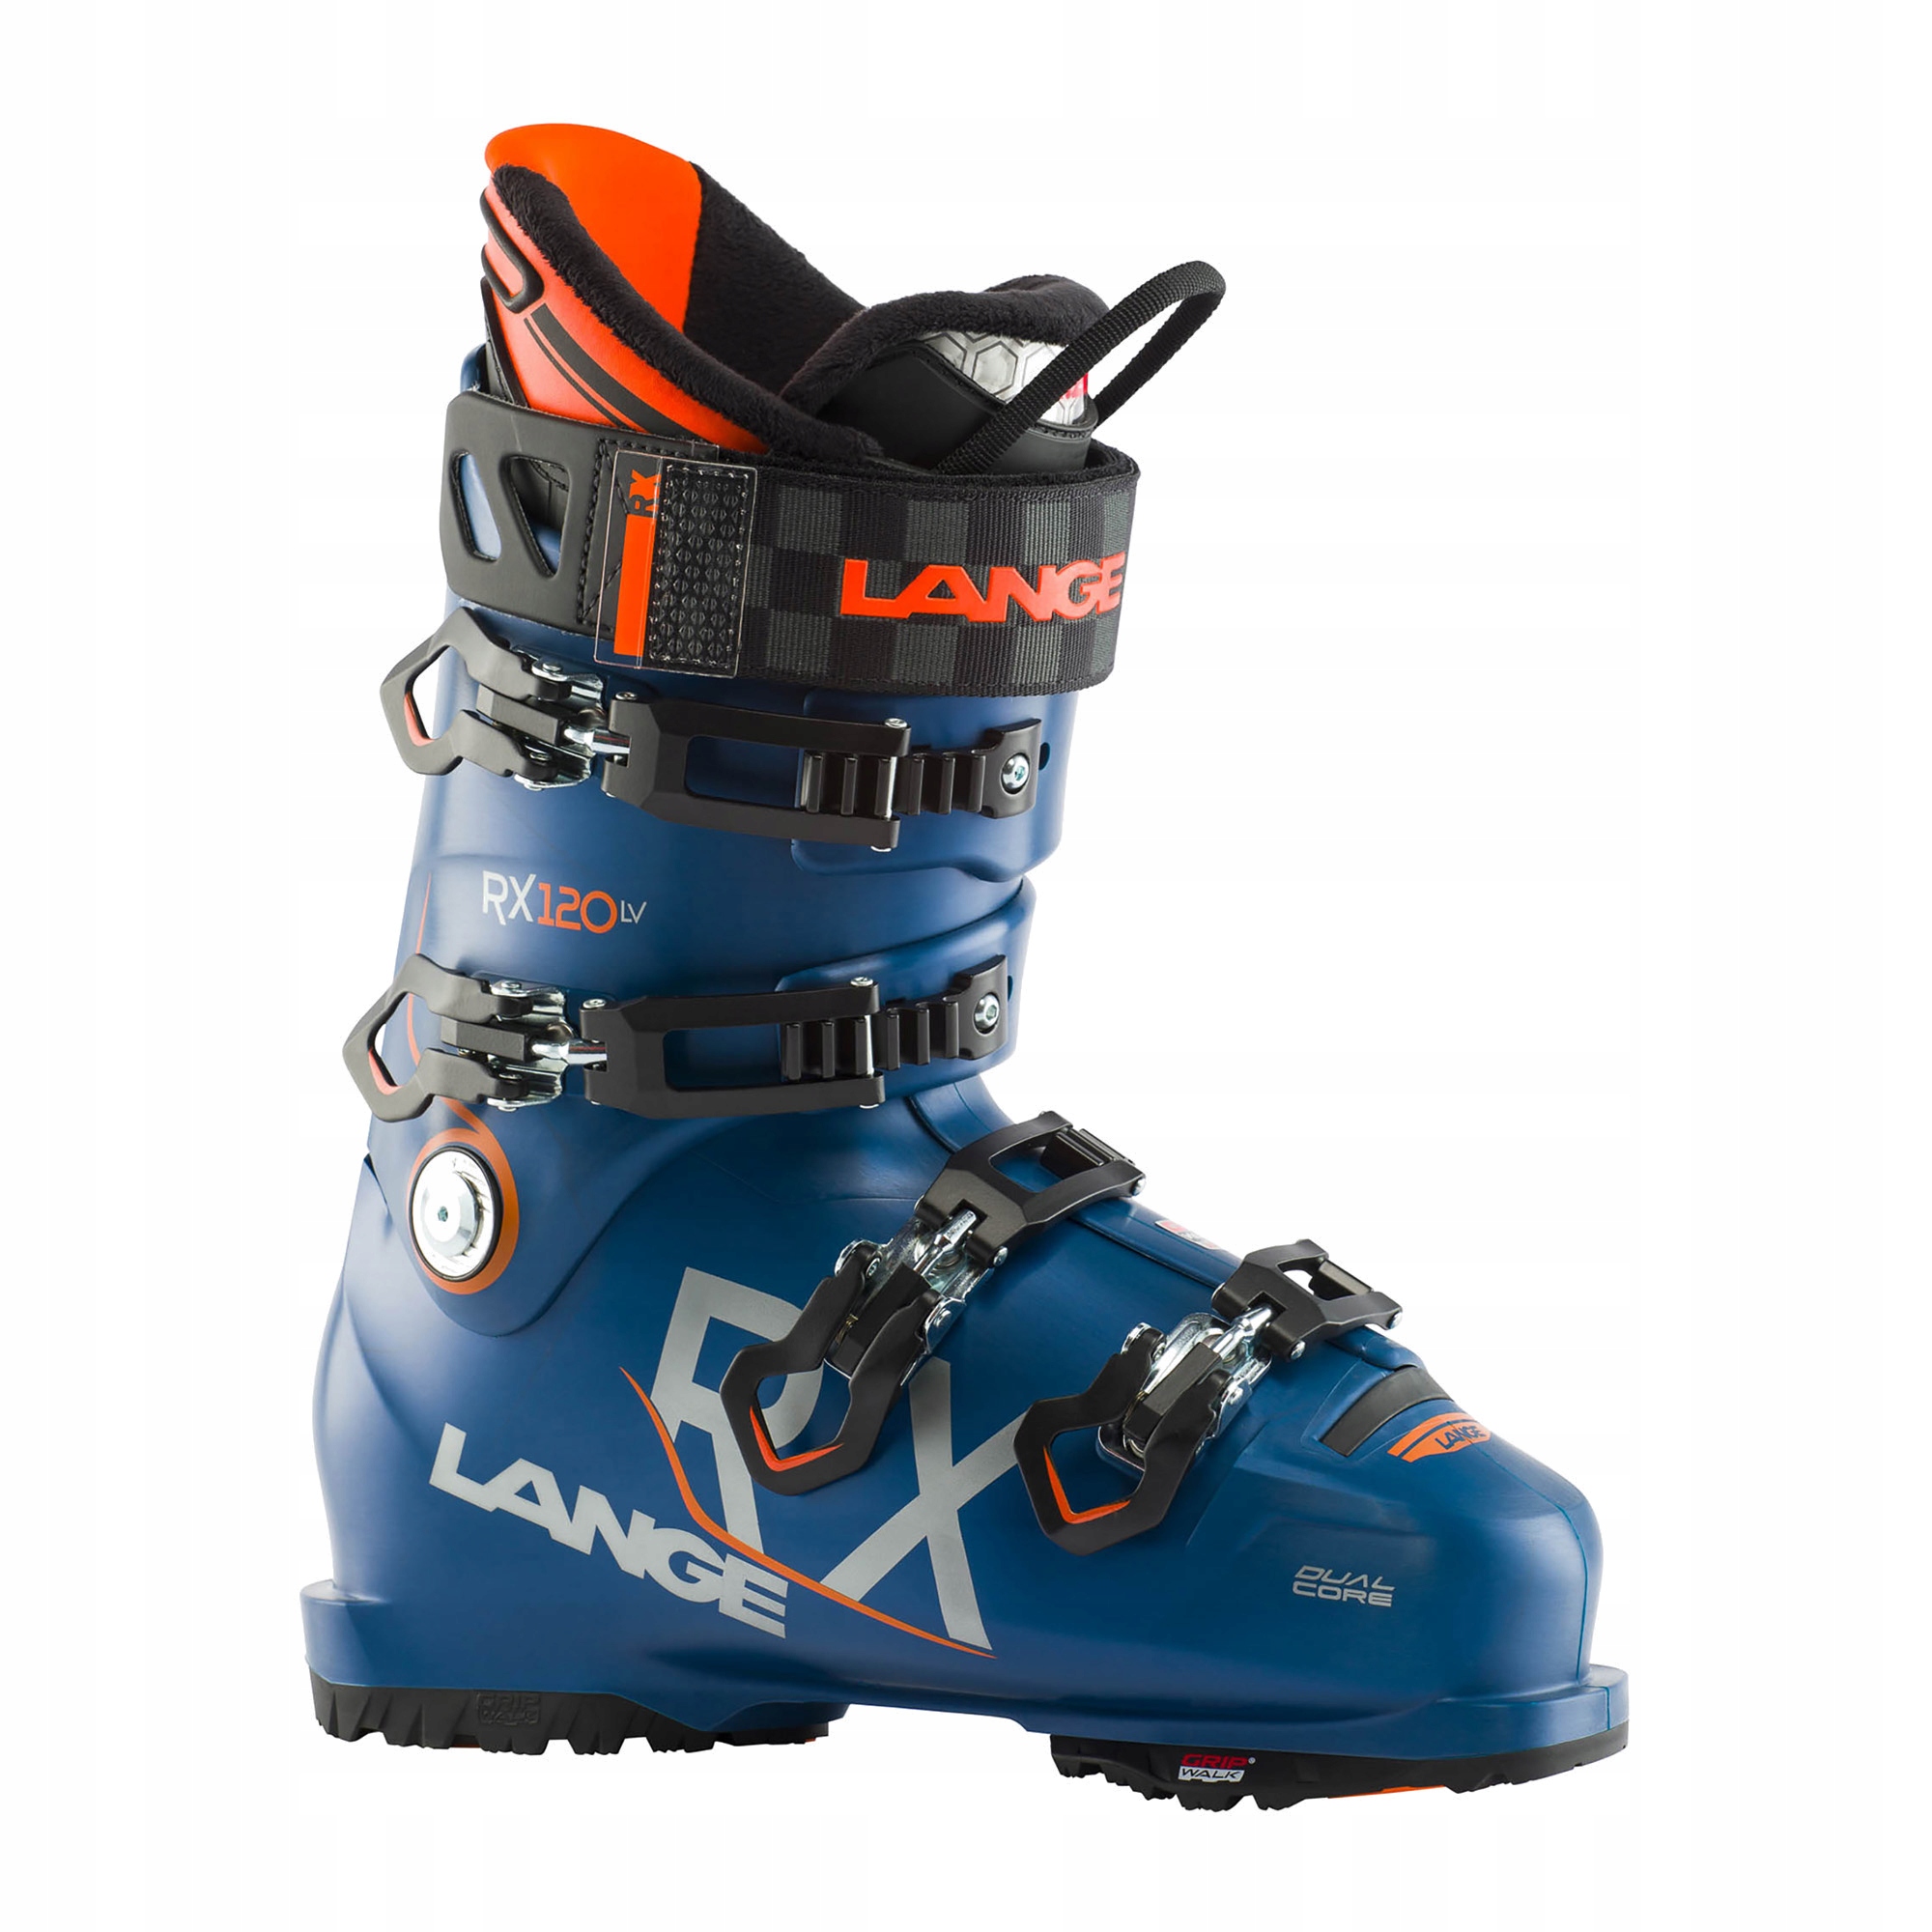 Lyžiarske topánky Lange RX 120 LV modré LBK2060 27.5 cm